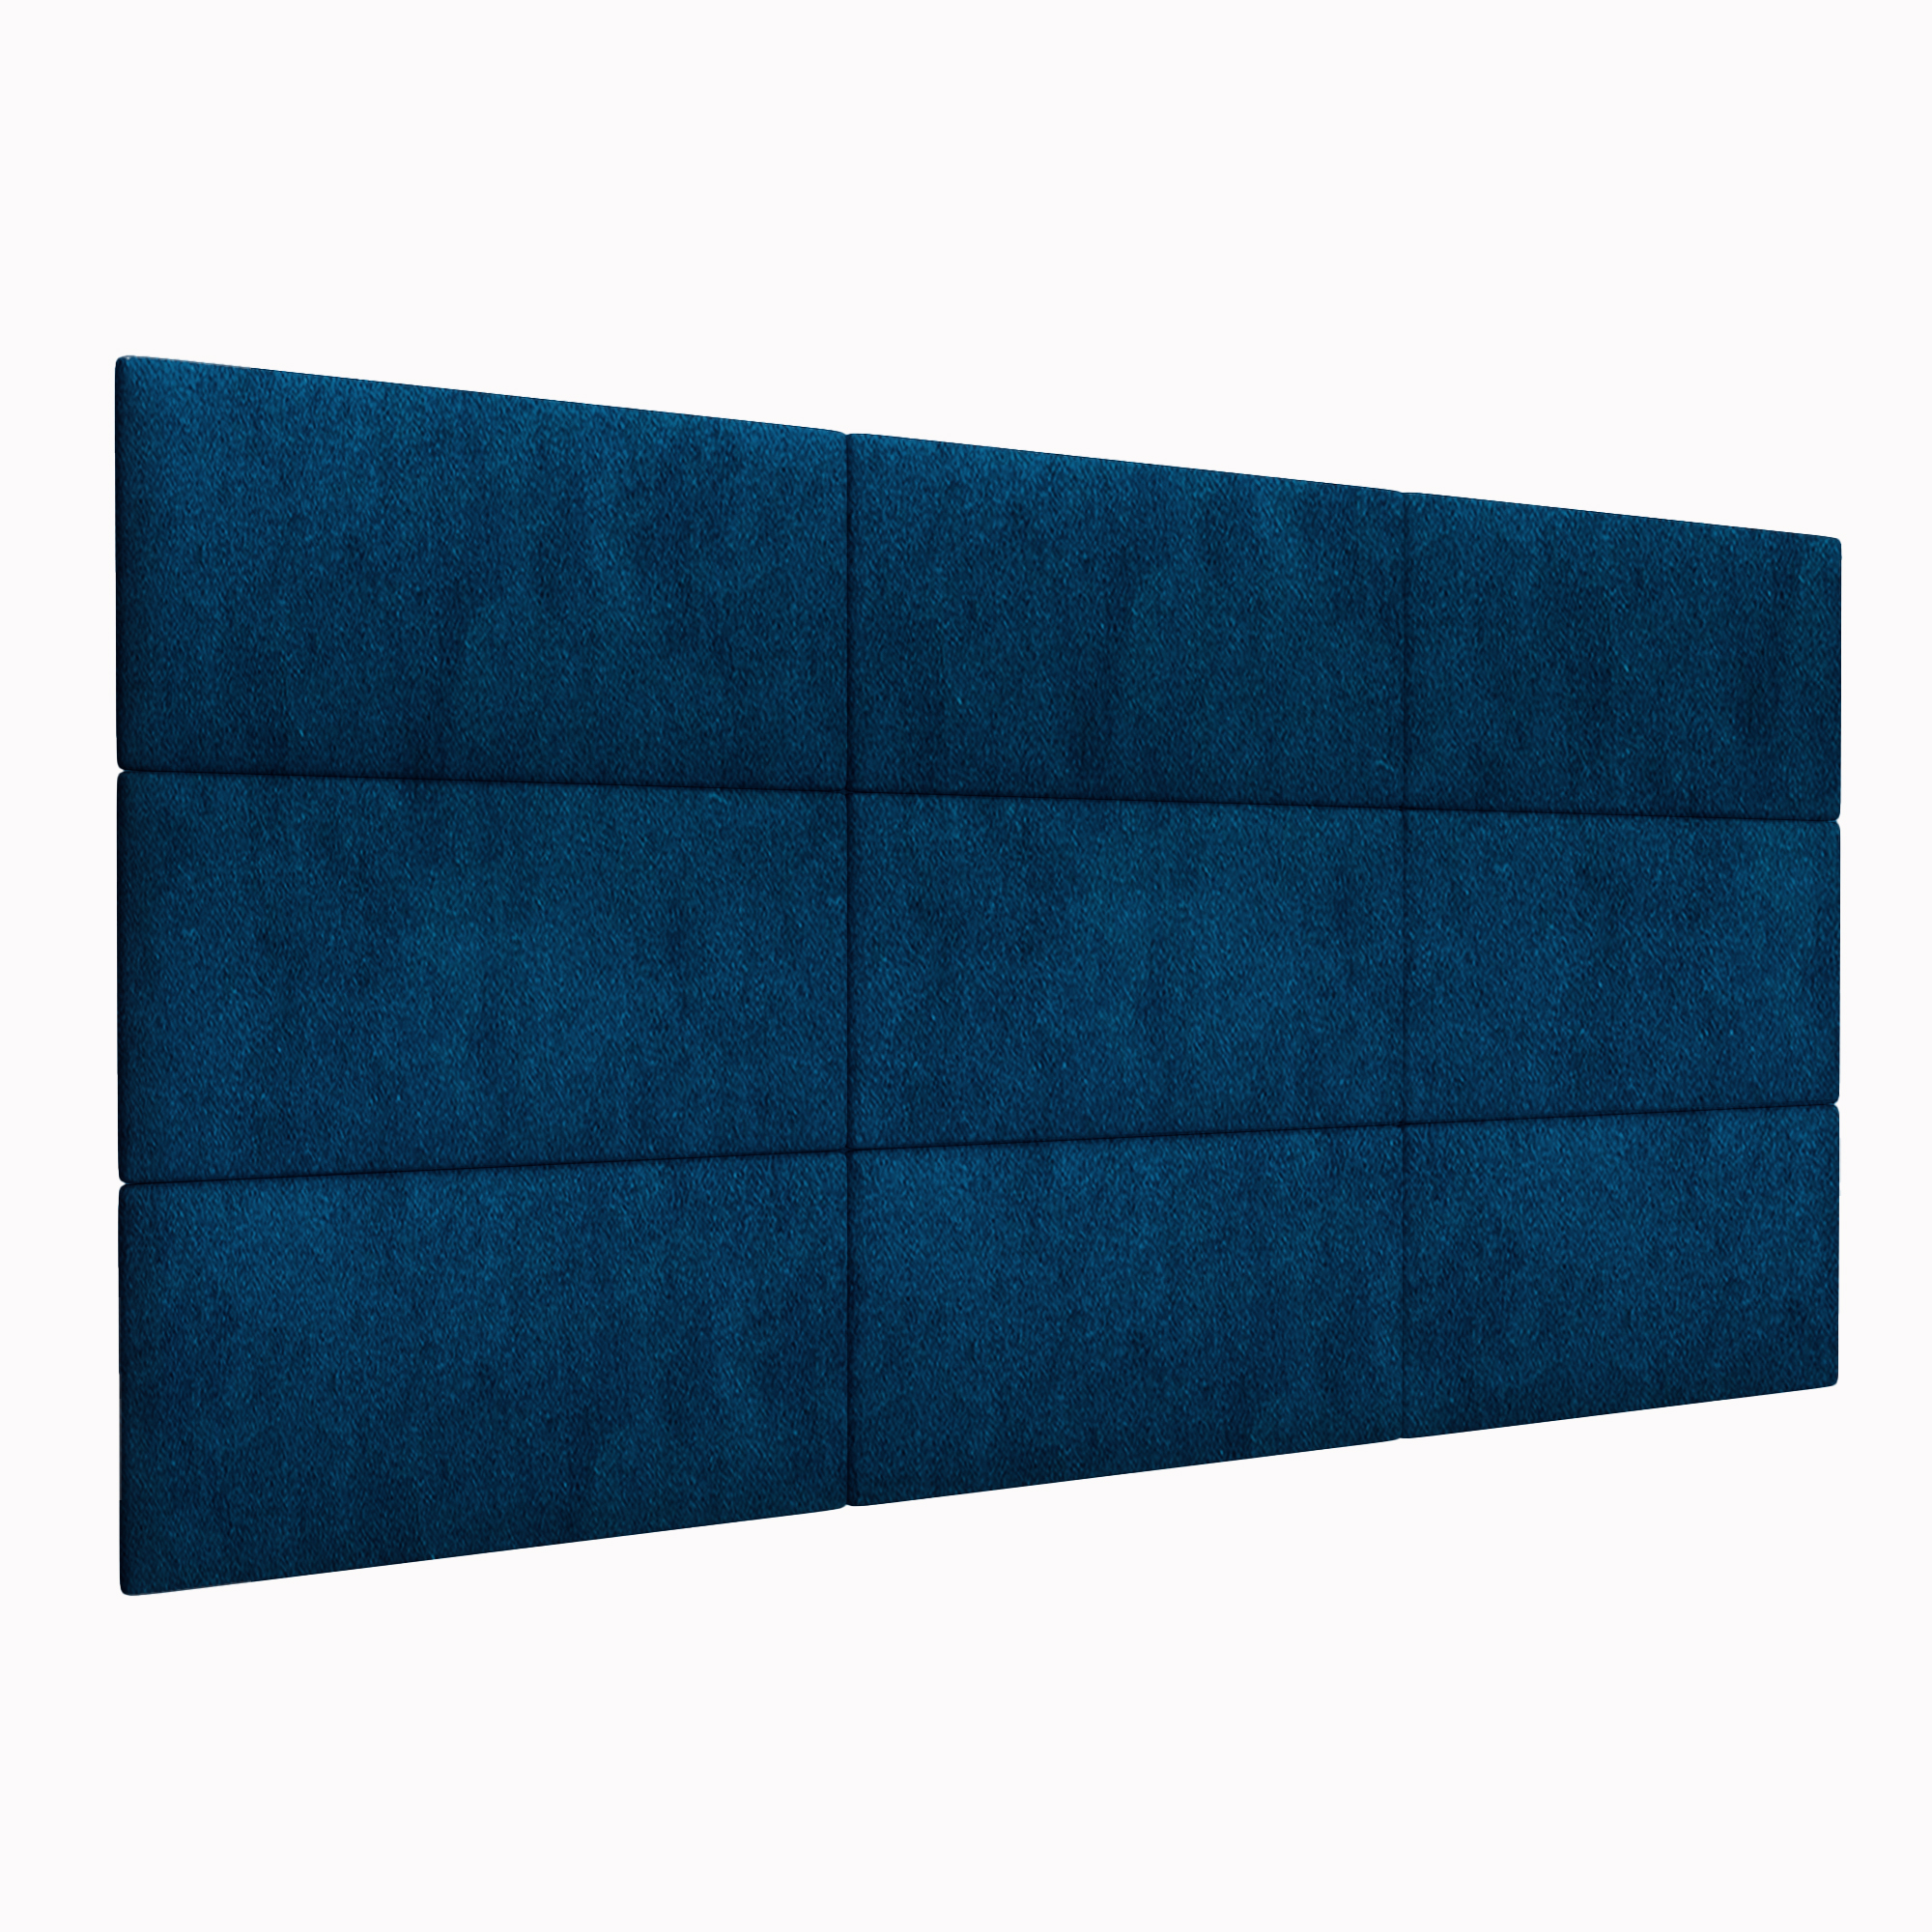 Шумо звукоизоляционные мягкие панели Velour Blue 30х60 см 1 шт.